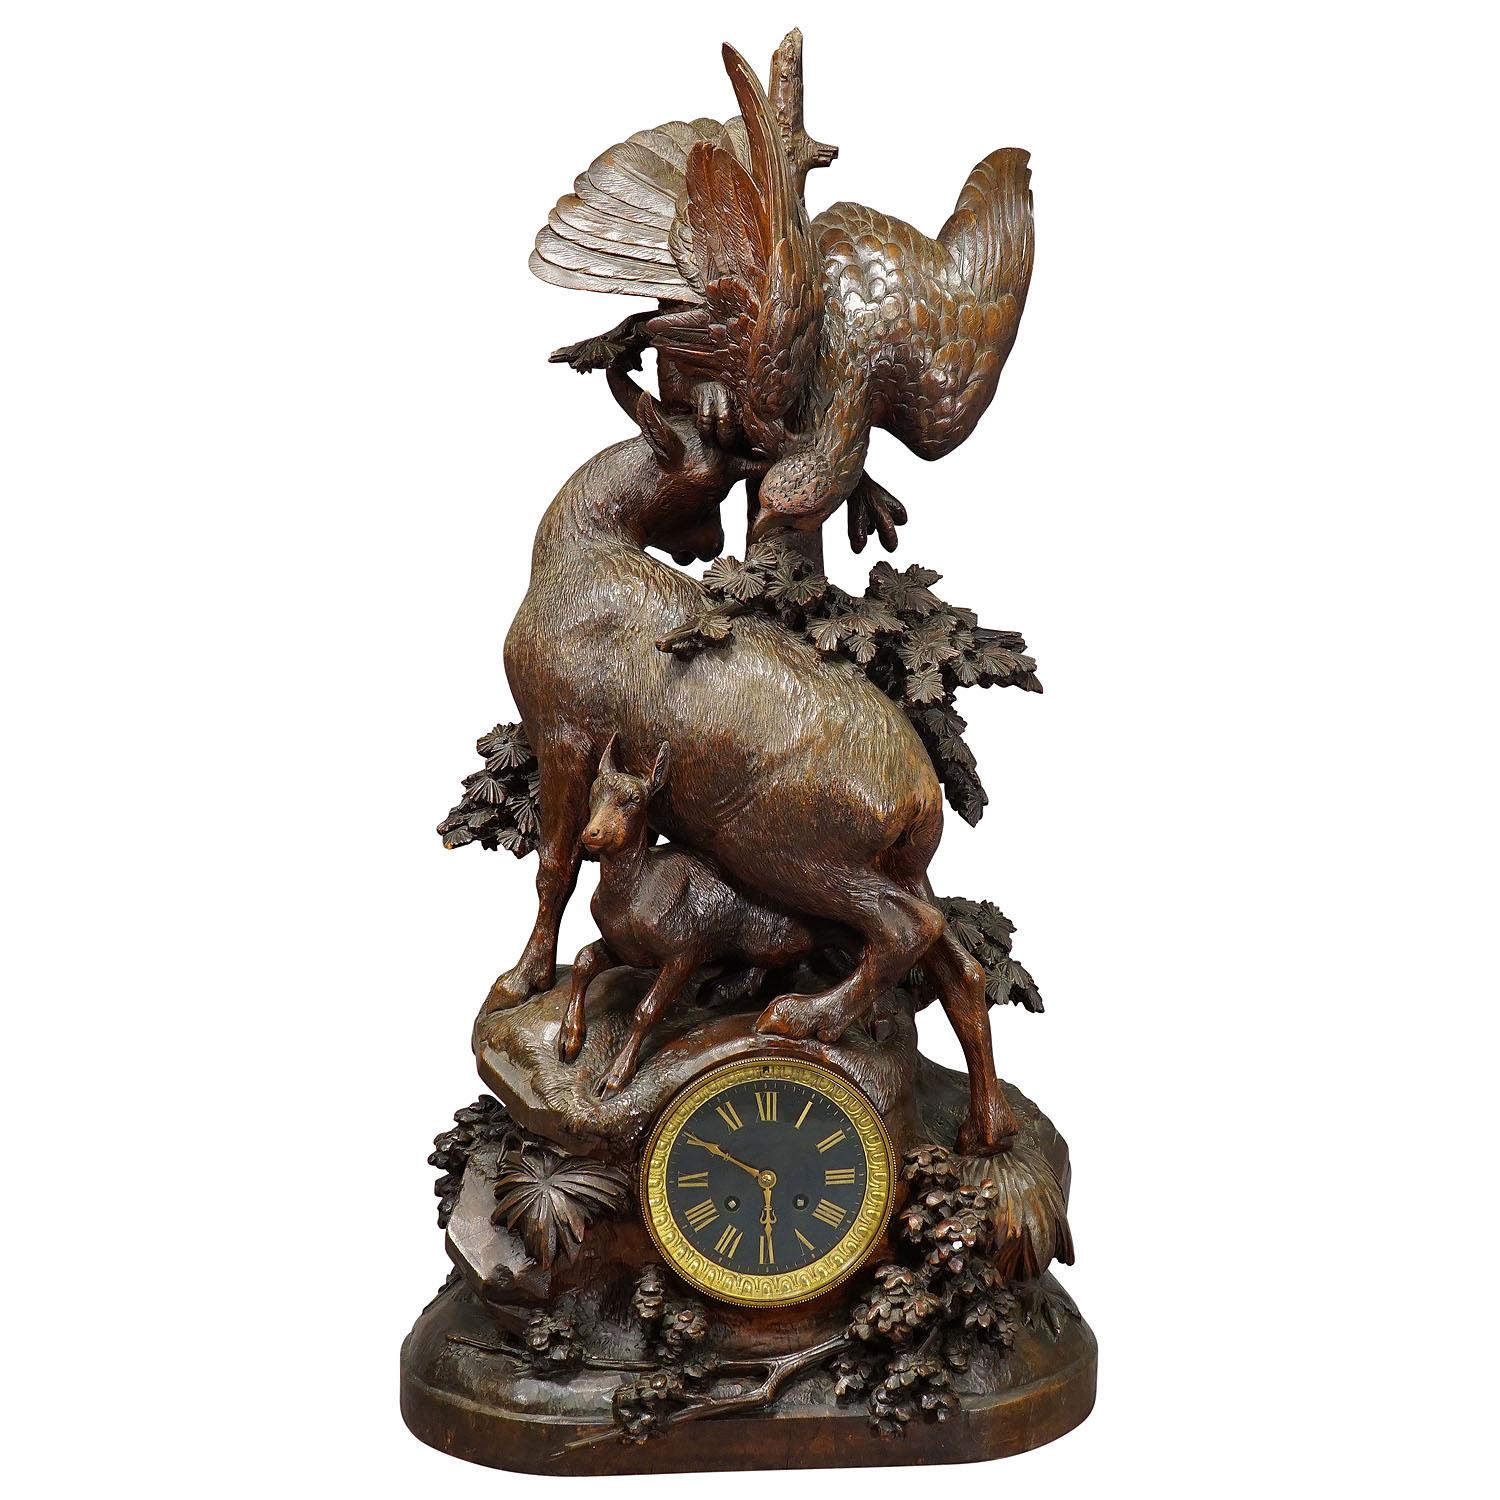 Pendule de cheminée ancienne avec aigle et famille Chamois, vers 1900

Grande horloge de cheminée en bois sculpté de la Forêt-Noire, surmontée d'un aigle et d'un chamois défendant son enfant. L'horloge est encastrée dans une pile de bois sculptée à